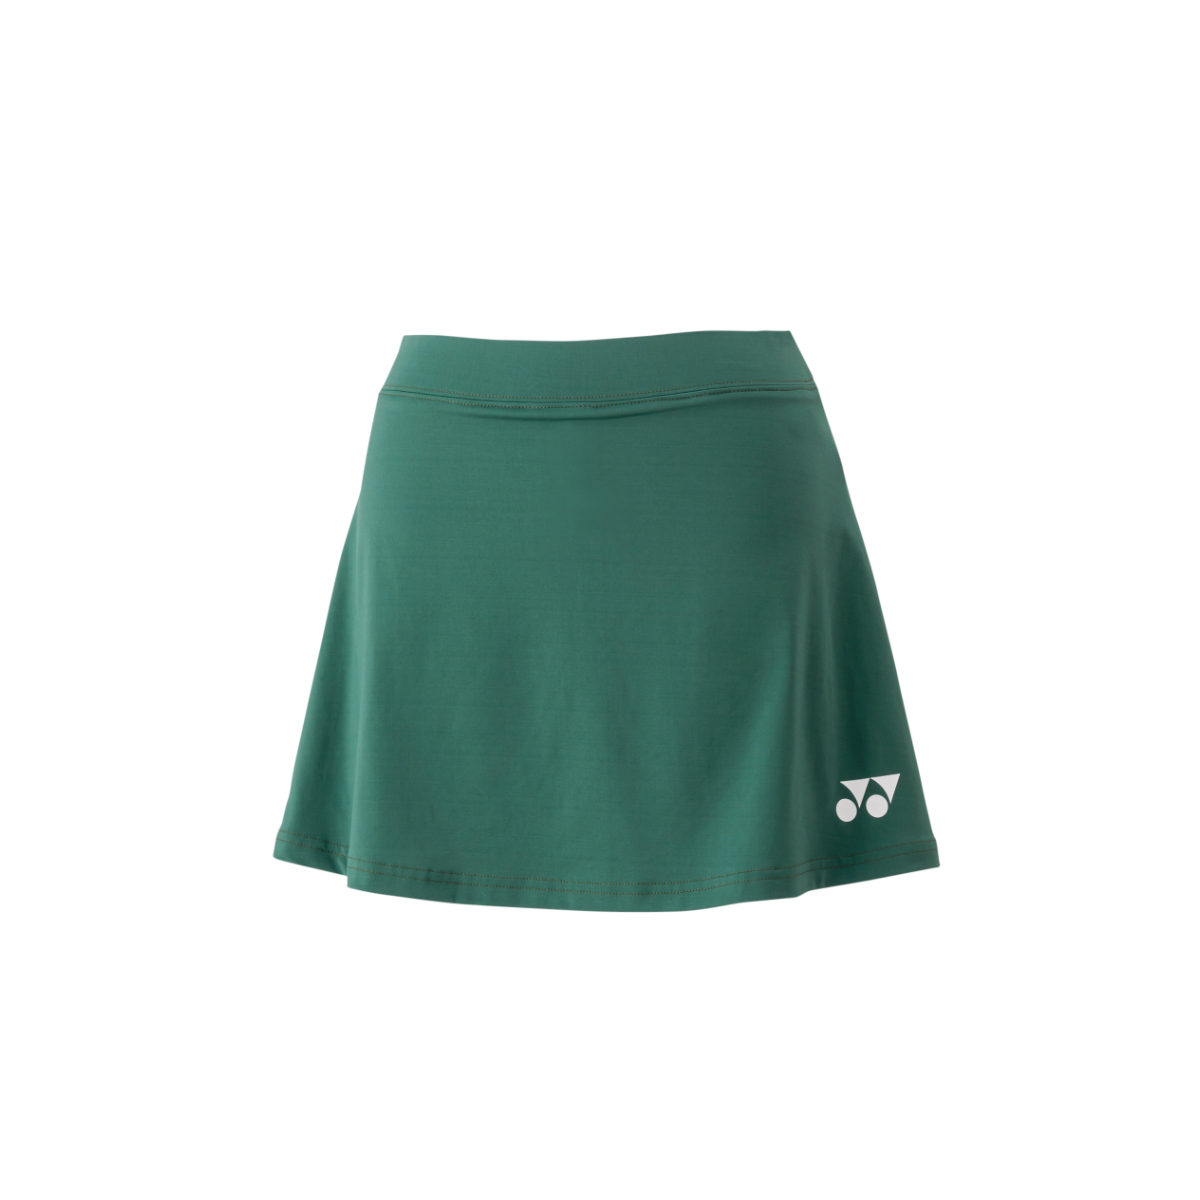 LADIES SKORT YW0030 Antique Green (with inner Shorts)